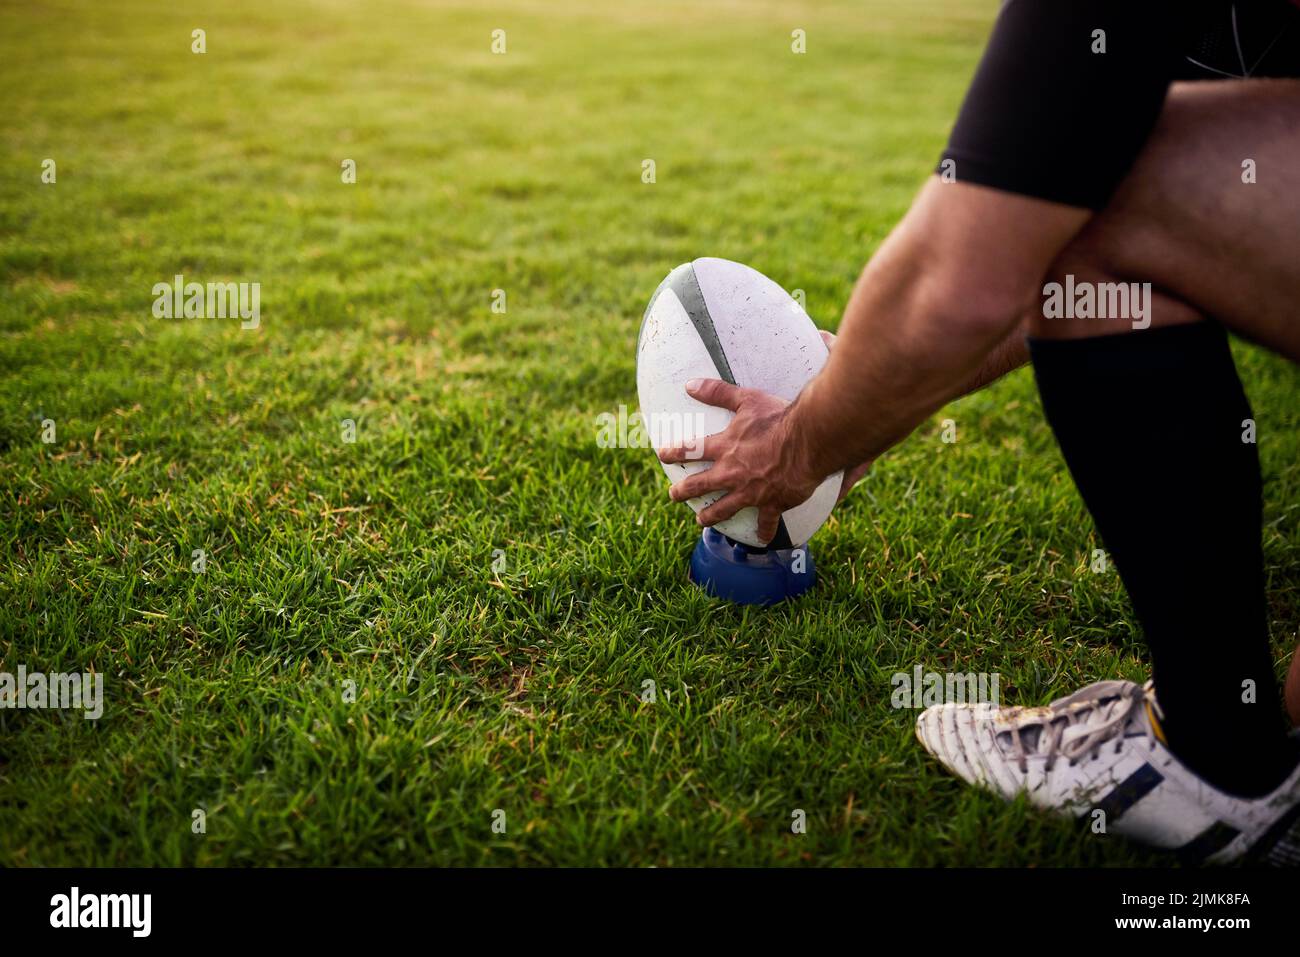 Trabajando en mi habilidad. Un deportista irreconocible agachándose solo durante la práctica de rugby en un club deportivo. Foto de stock